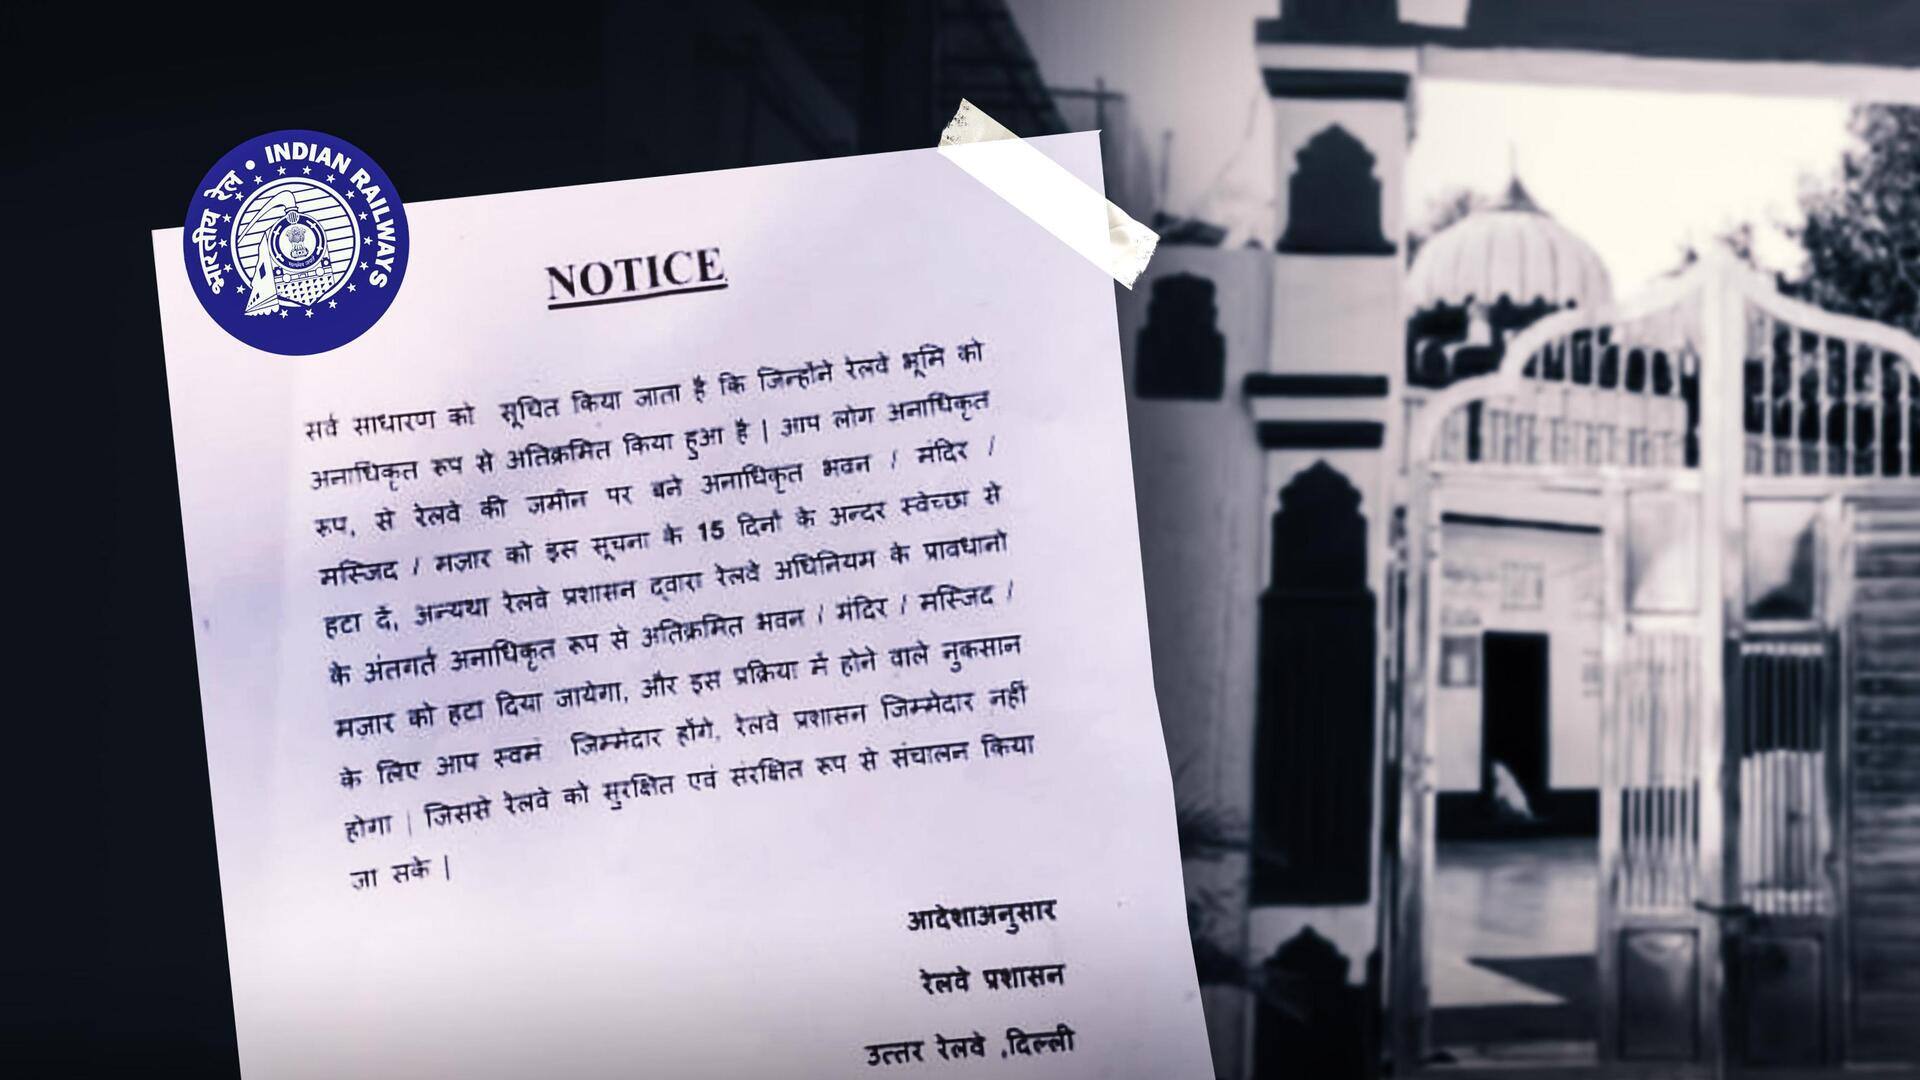 दिल्ली: रेलवे ने 2 मस्जिदों को जारी किया नोटिस, अतिक्रमण हटाने के दिए निर्देश